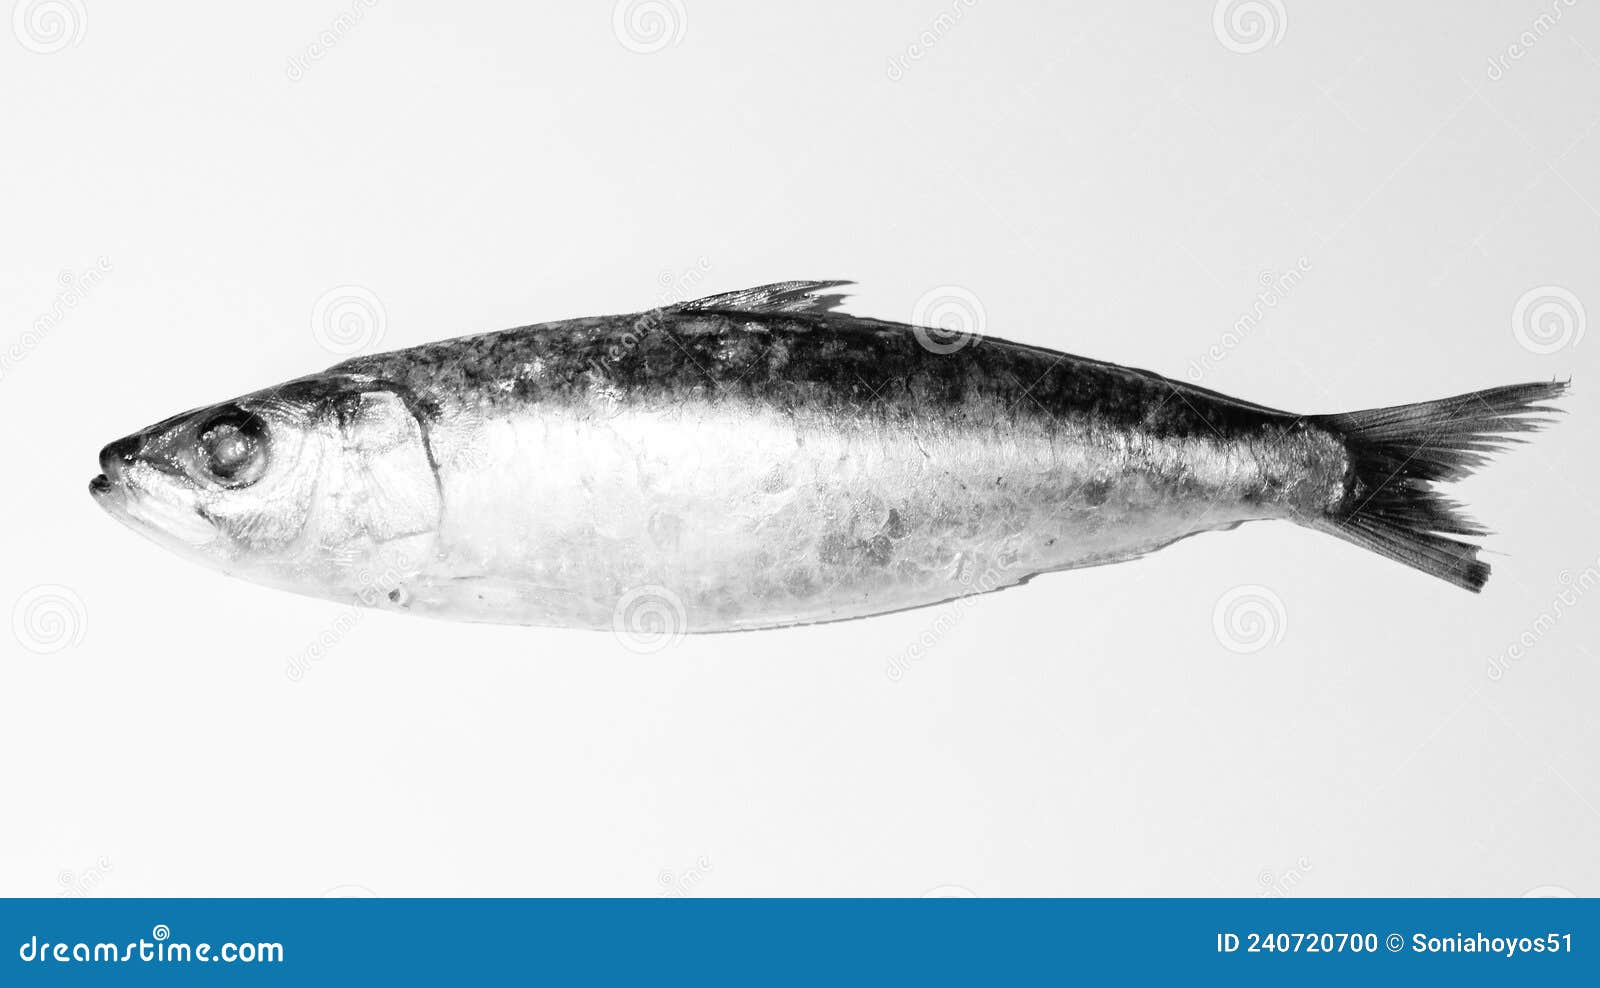 black and white sardine